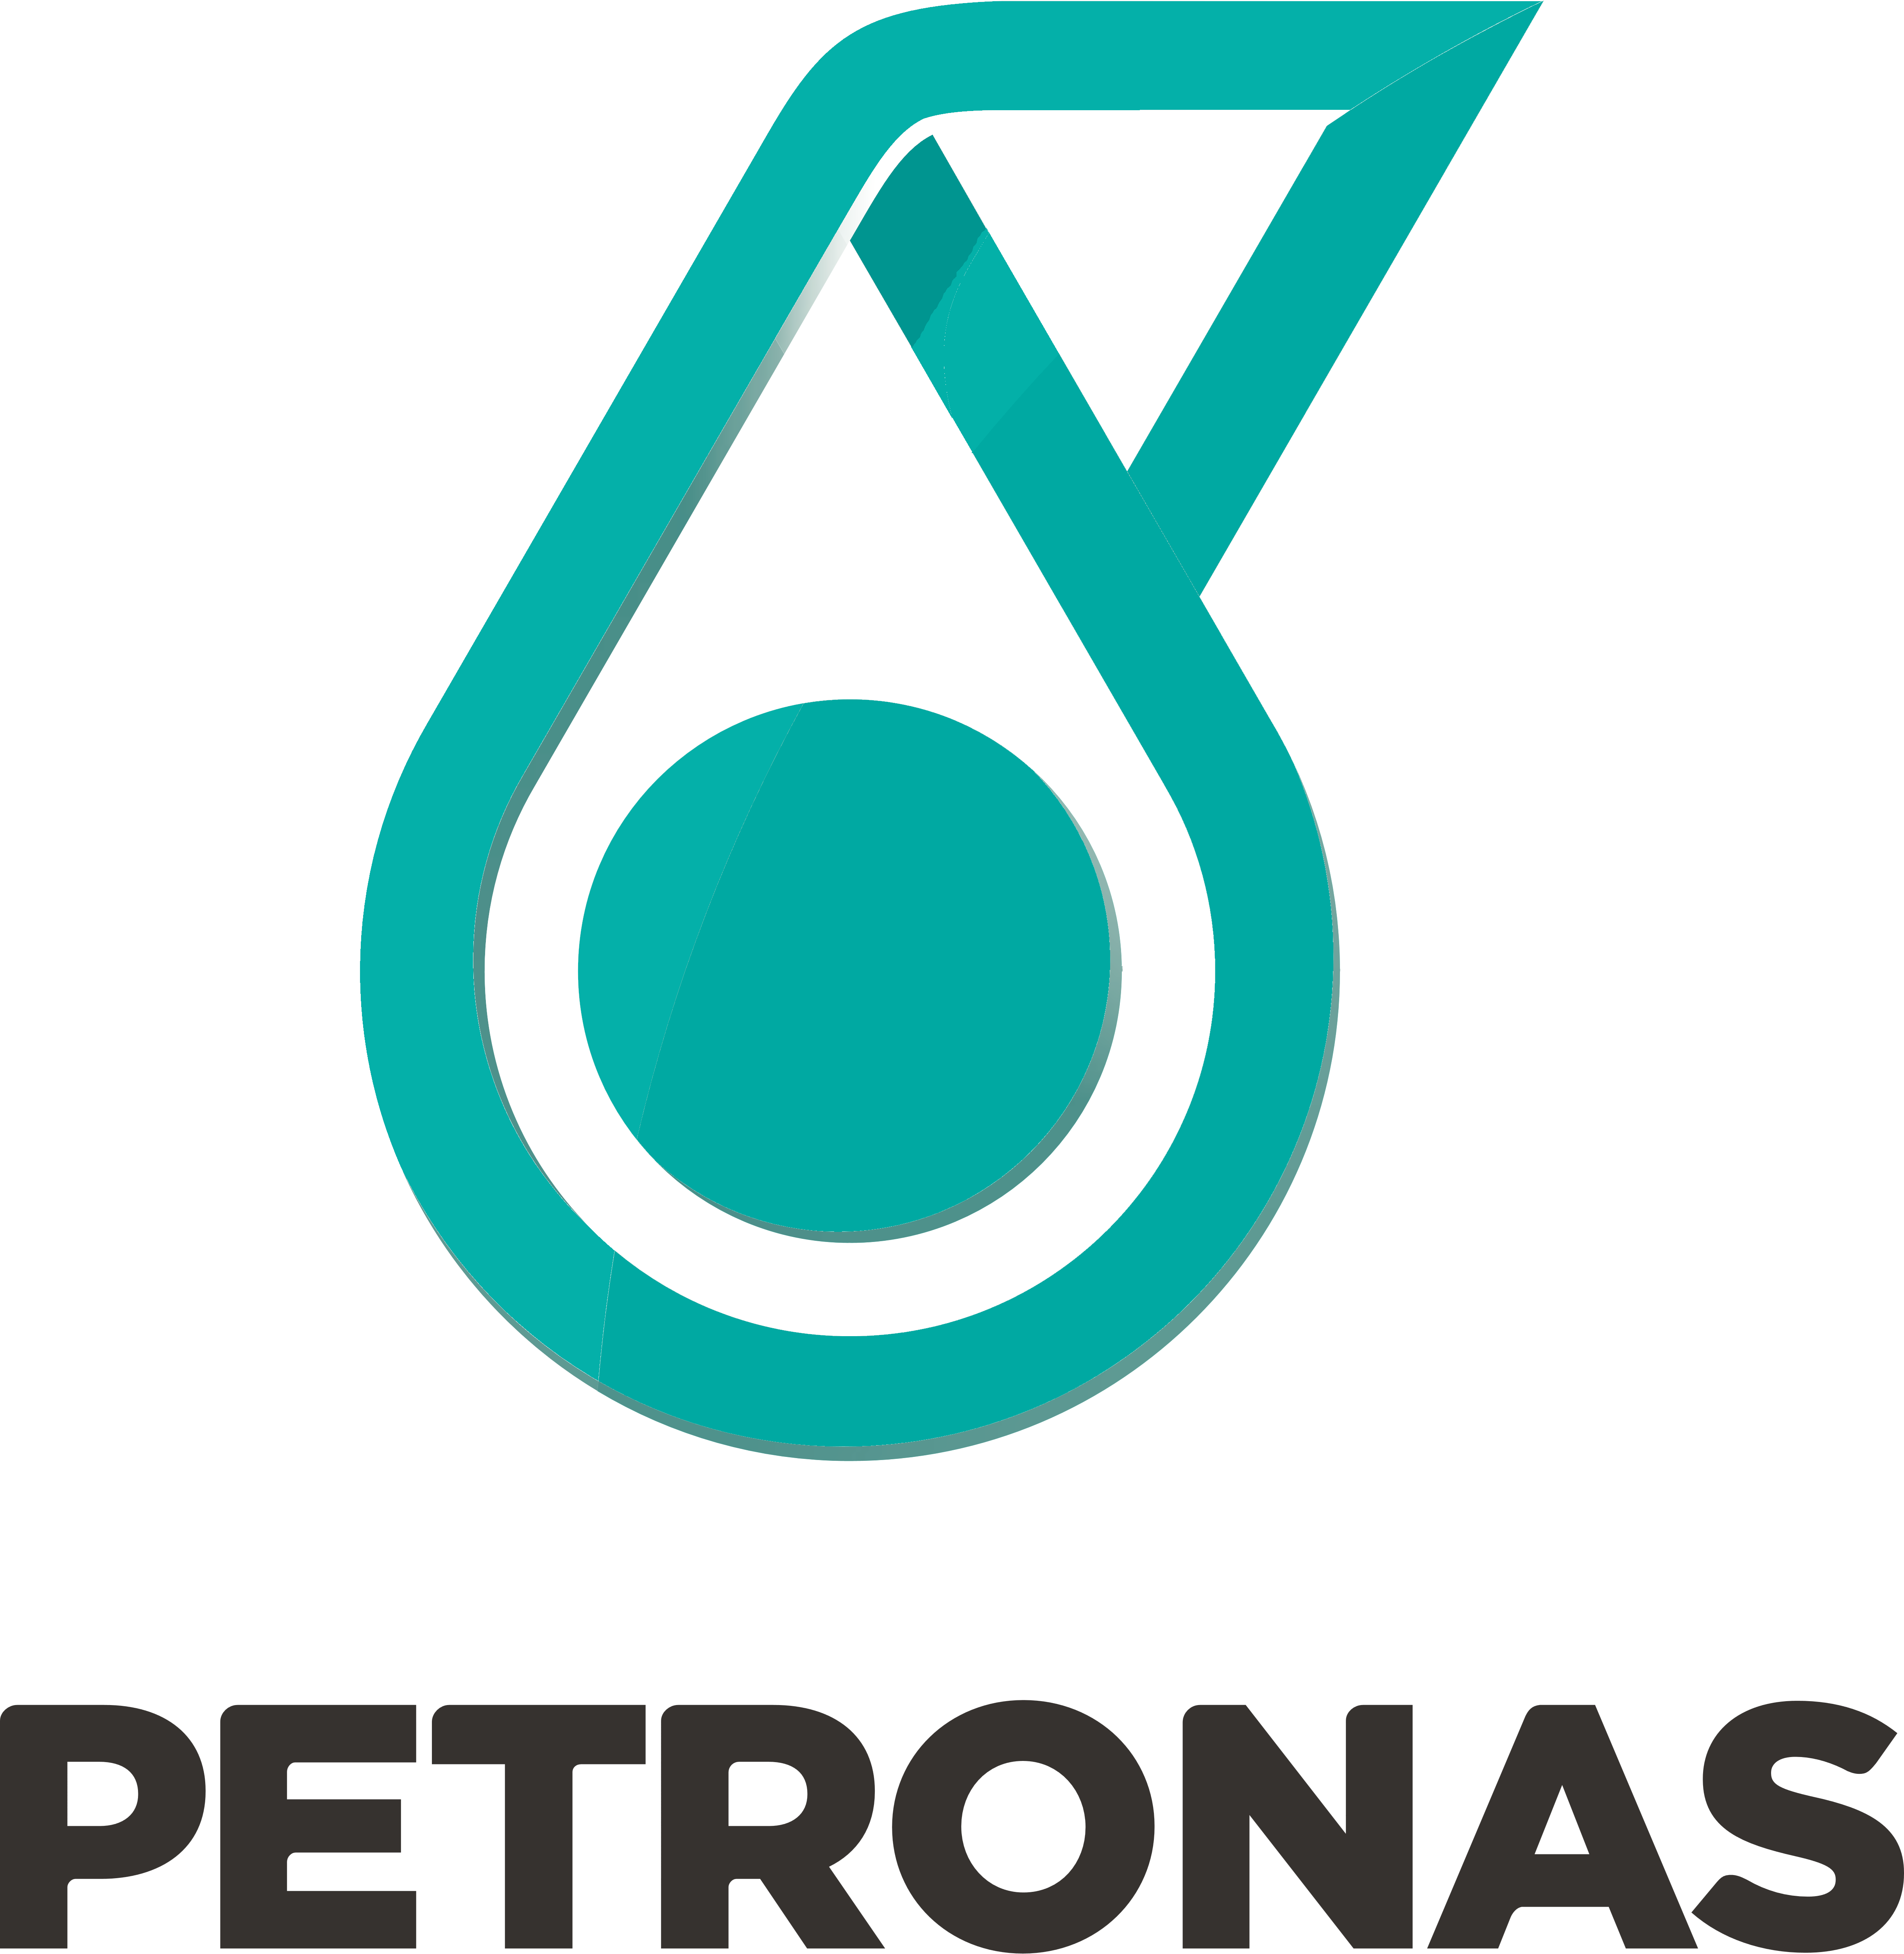 Petronas – Logos Download